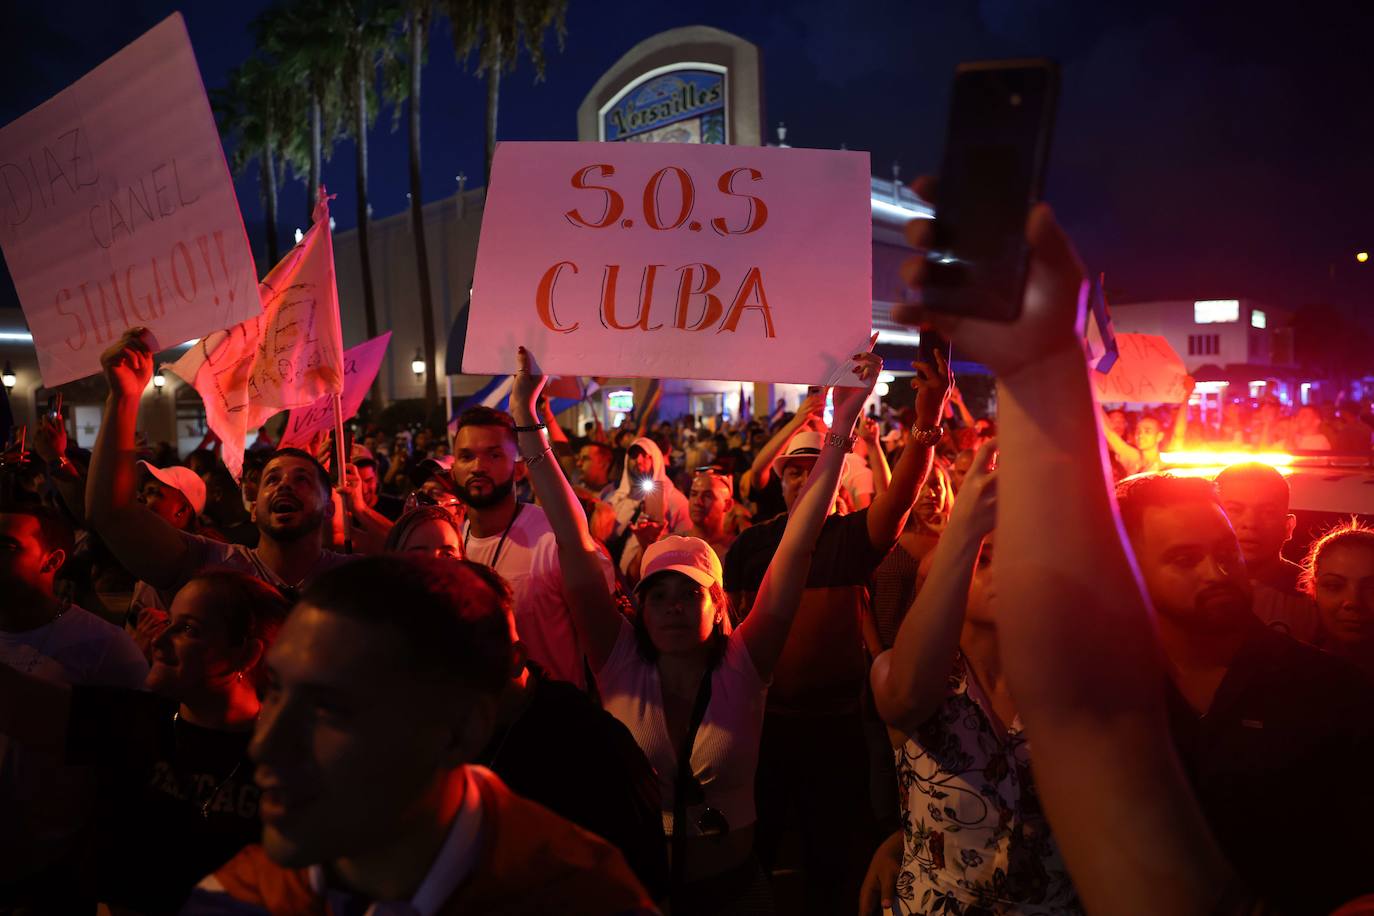 Fotos Las Protestas De Cuba En Imágenes El Correo 4168